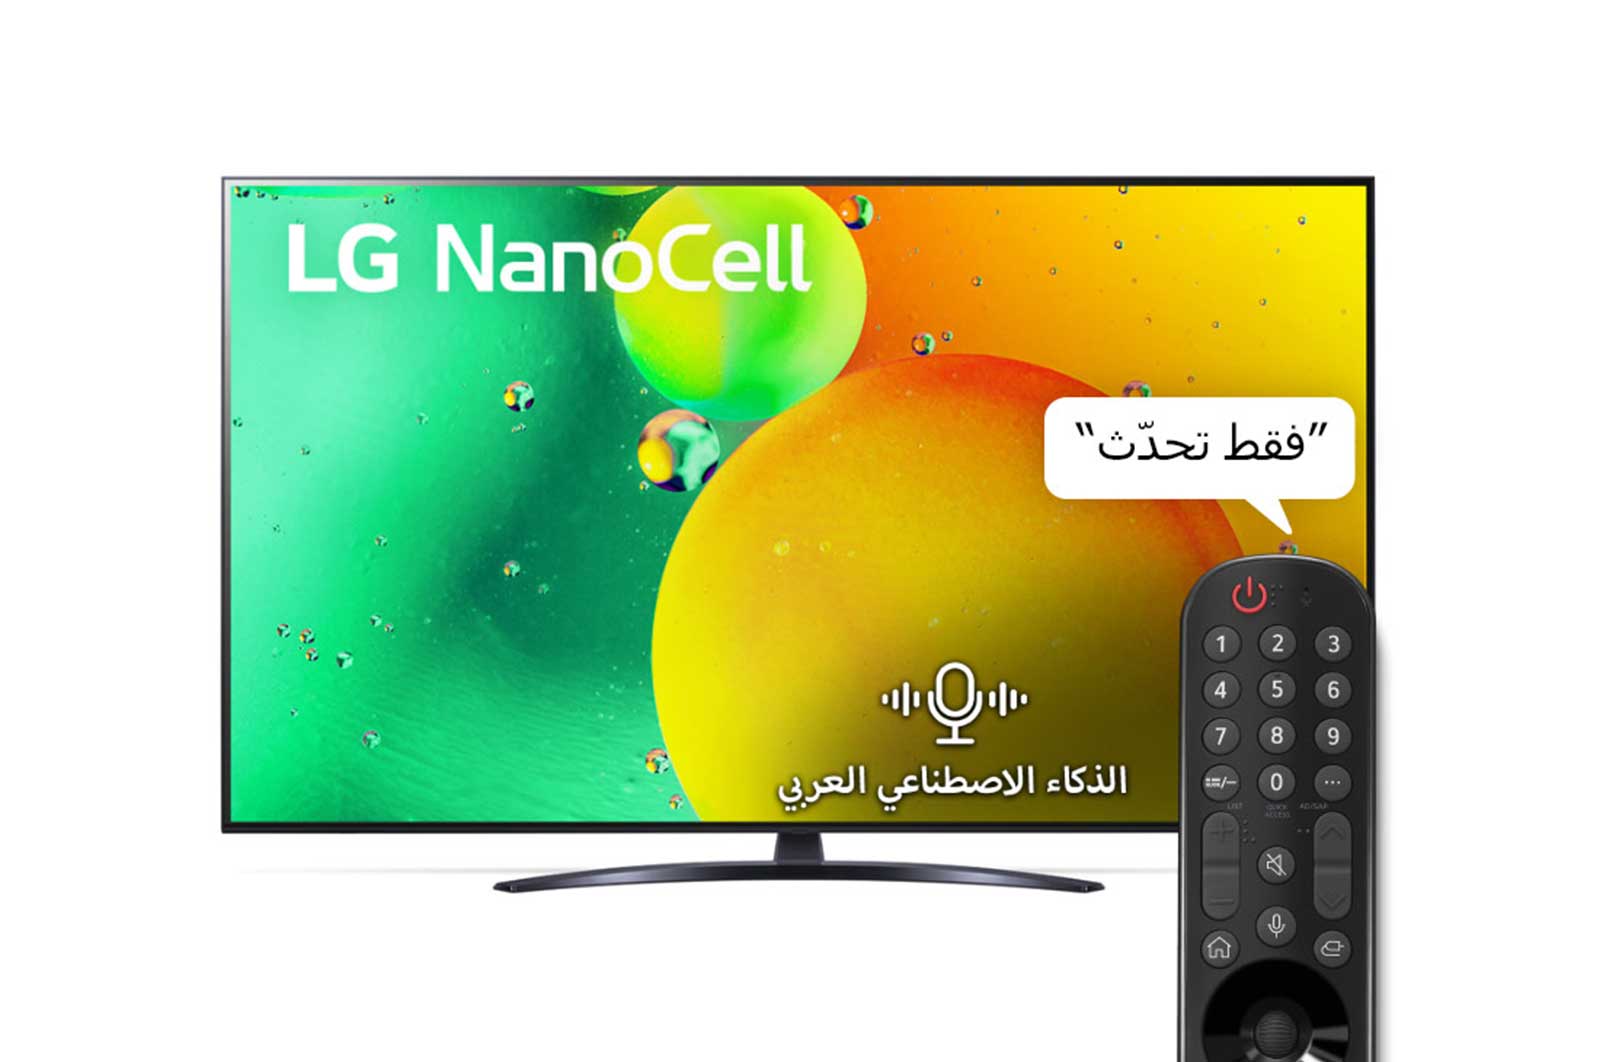 LG إل جي نانوسيل 4K تلفاز ذكي 55 بوصة السلسة 79, معالج ألفا 5 الجيل الخامس, ألوان نانو, HDR10 Pro, HGiG., 55NANO796QA